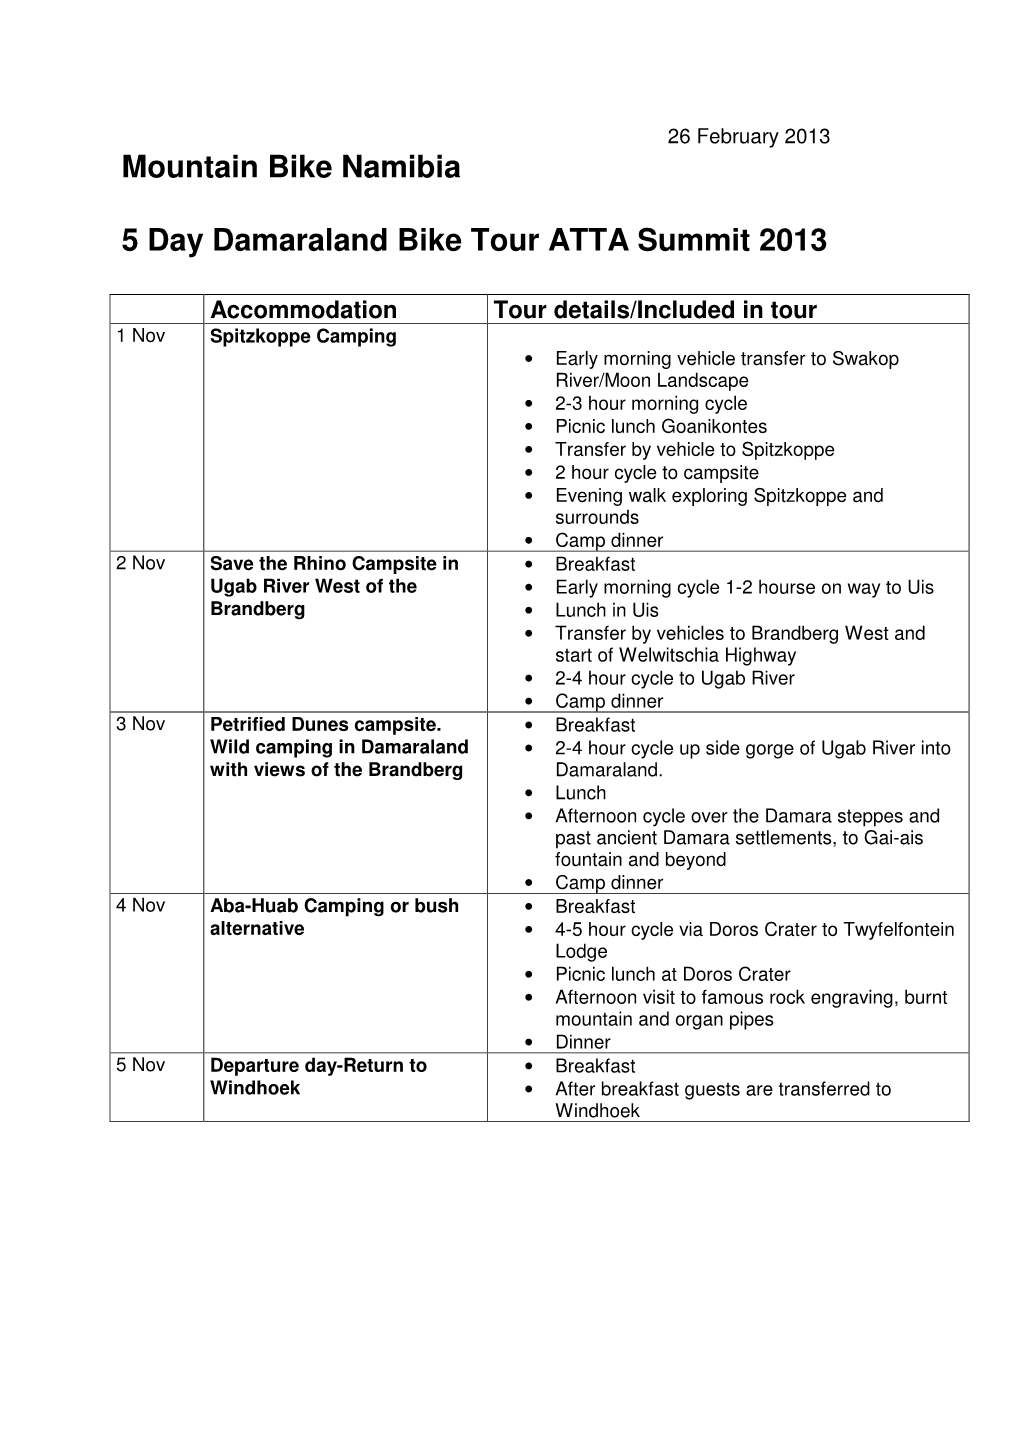 ATTA 5 Day Damaraland Bike Tour Summit 2013